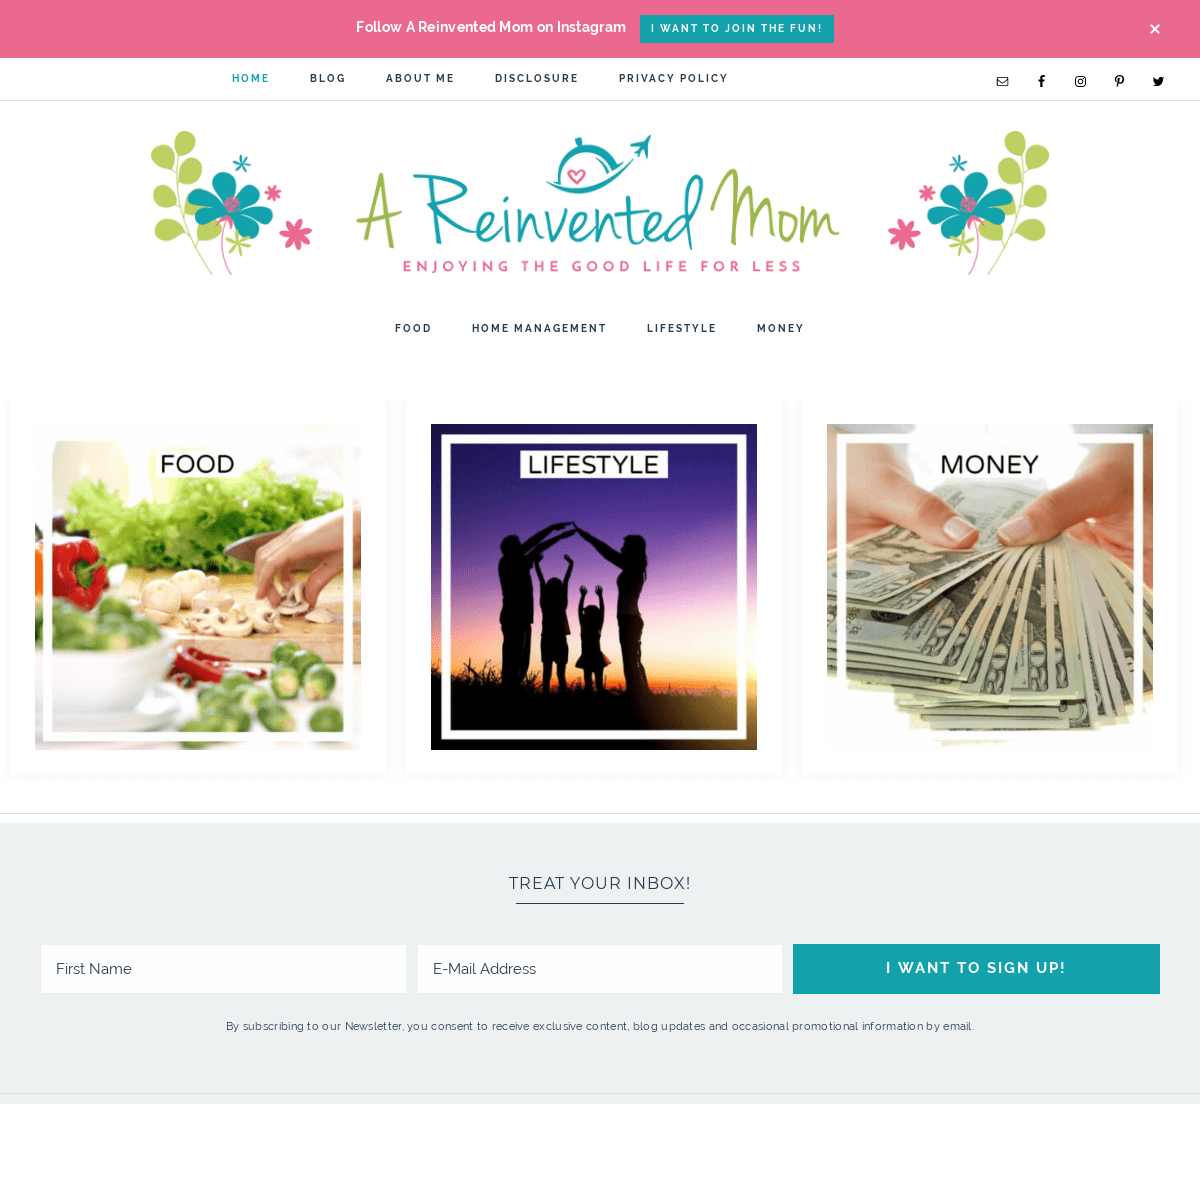 A complete backup of areinventedmom.com